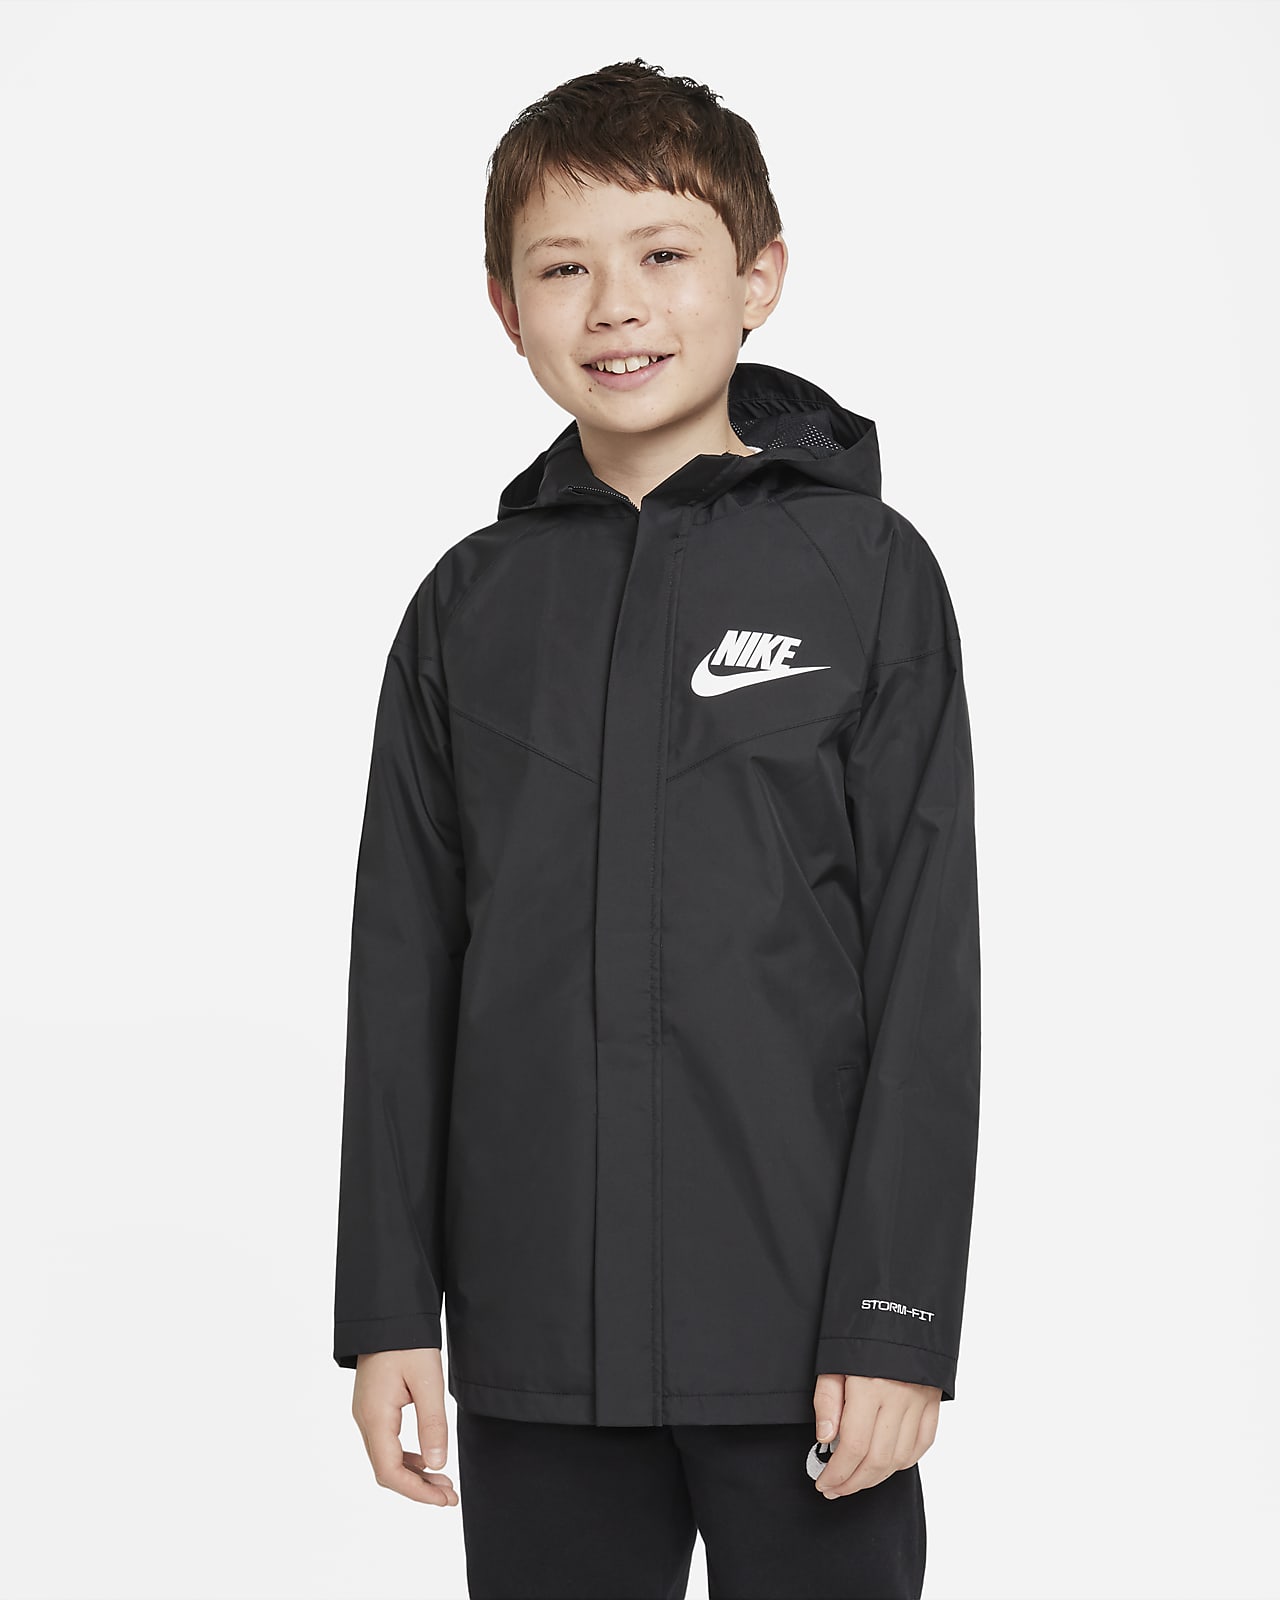 Voděodolná volná bunda Nike Sportswear Windpuffer Storm-FIT s kapucí a délkou po boky pro větší děti (chlapce)